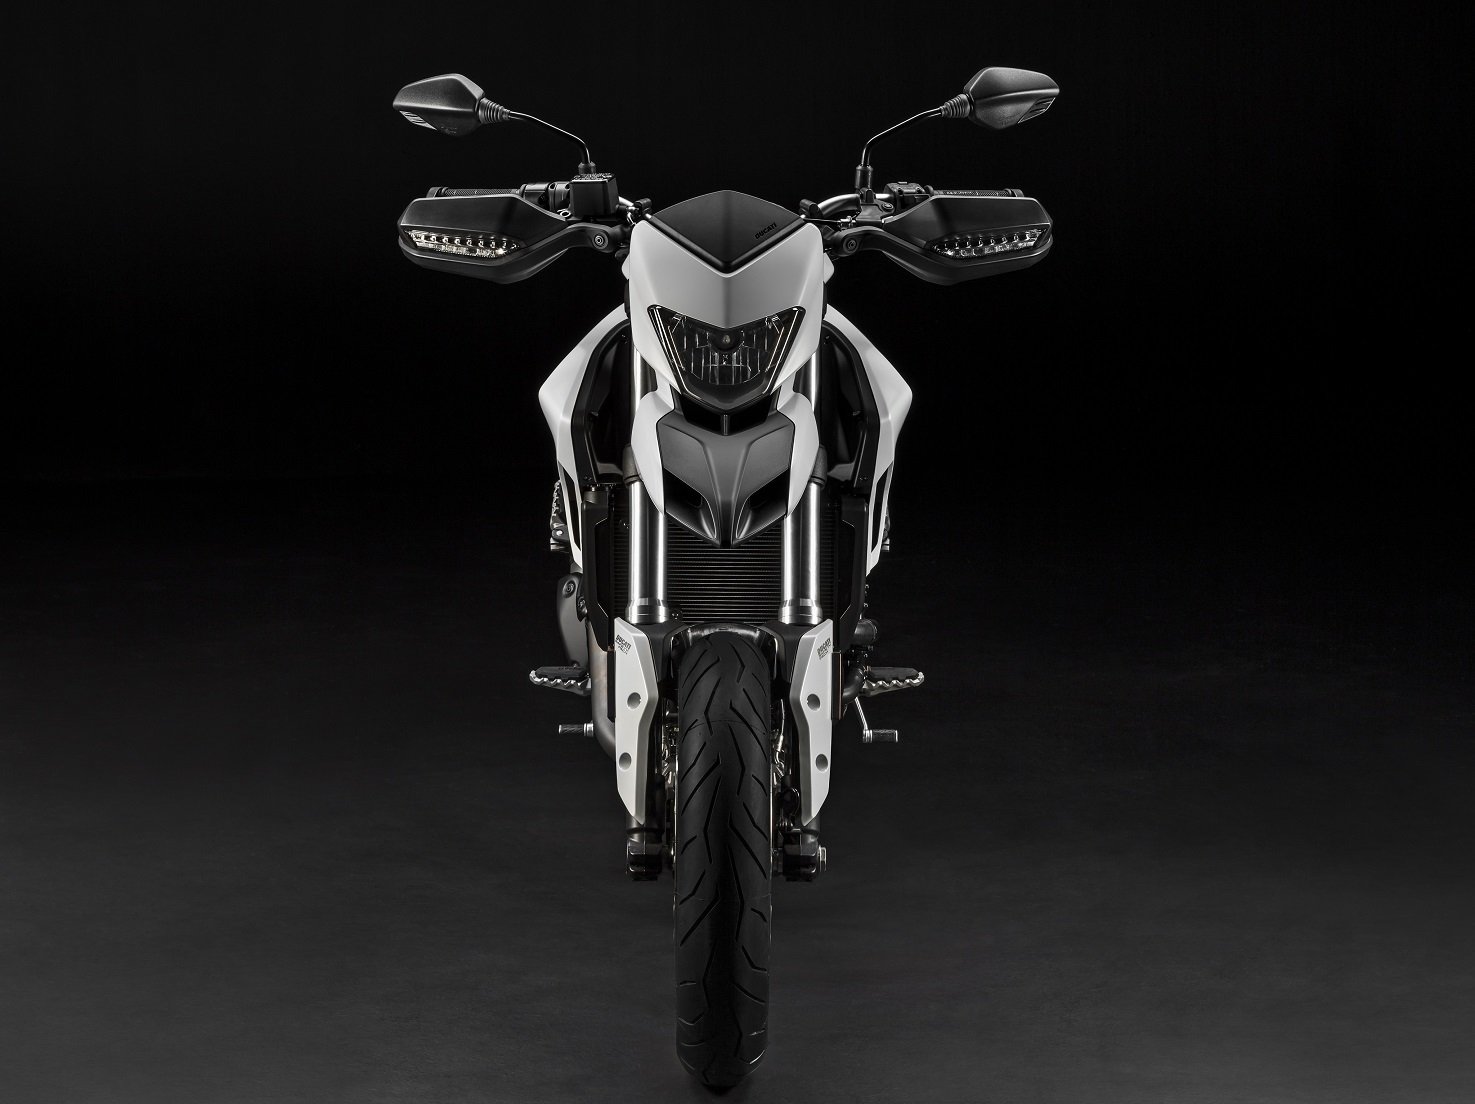 ducati, Hypermotard, 939, Motorcycles, 2016 Wallpaper